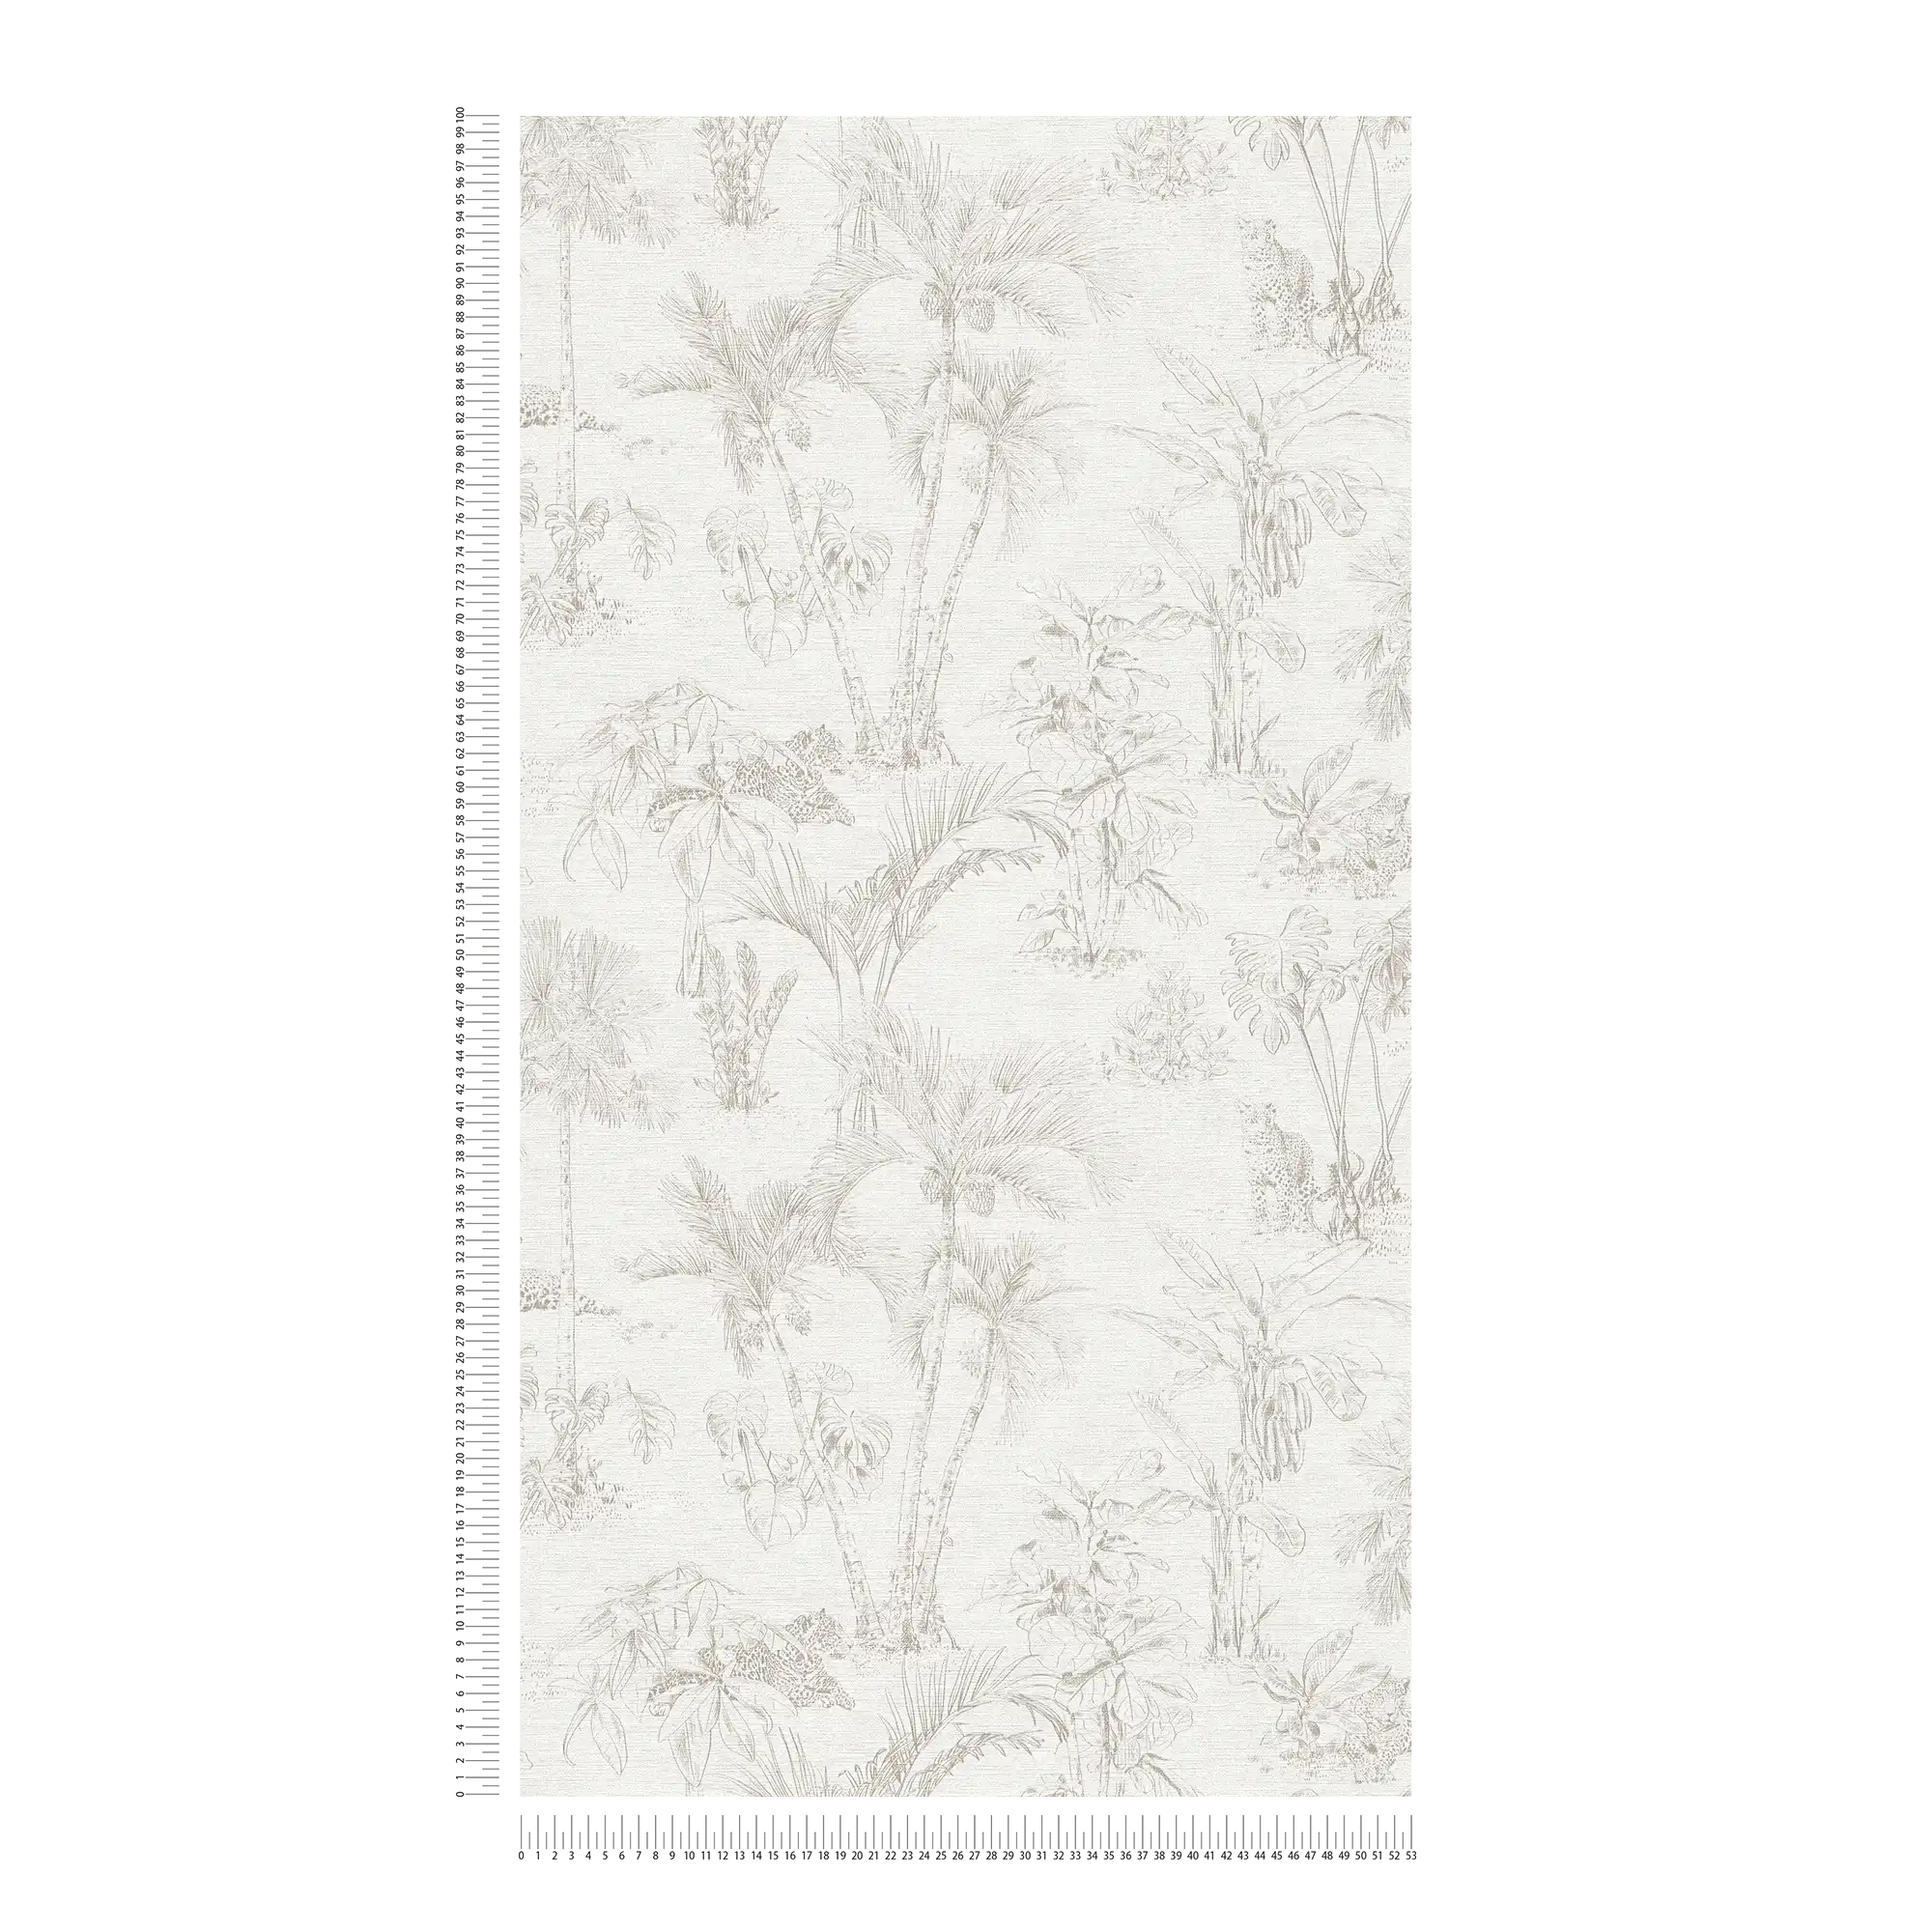             Dschungel Tapete mit Palmen Blättern & Tier Motiv – Beige, Grau
        